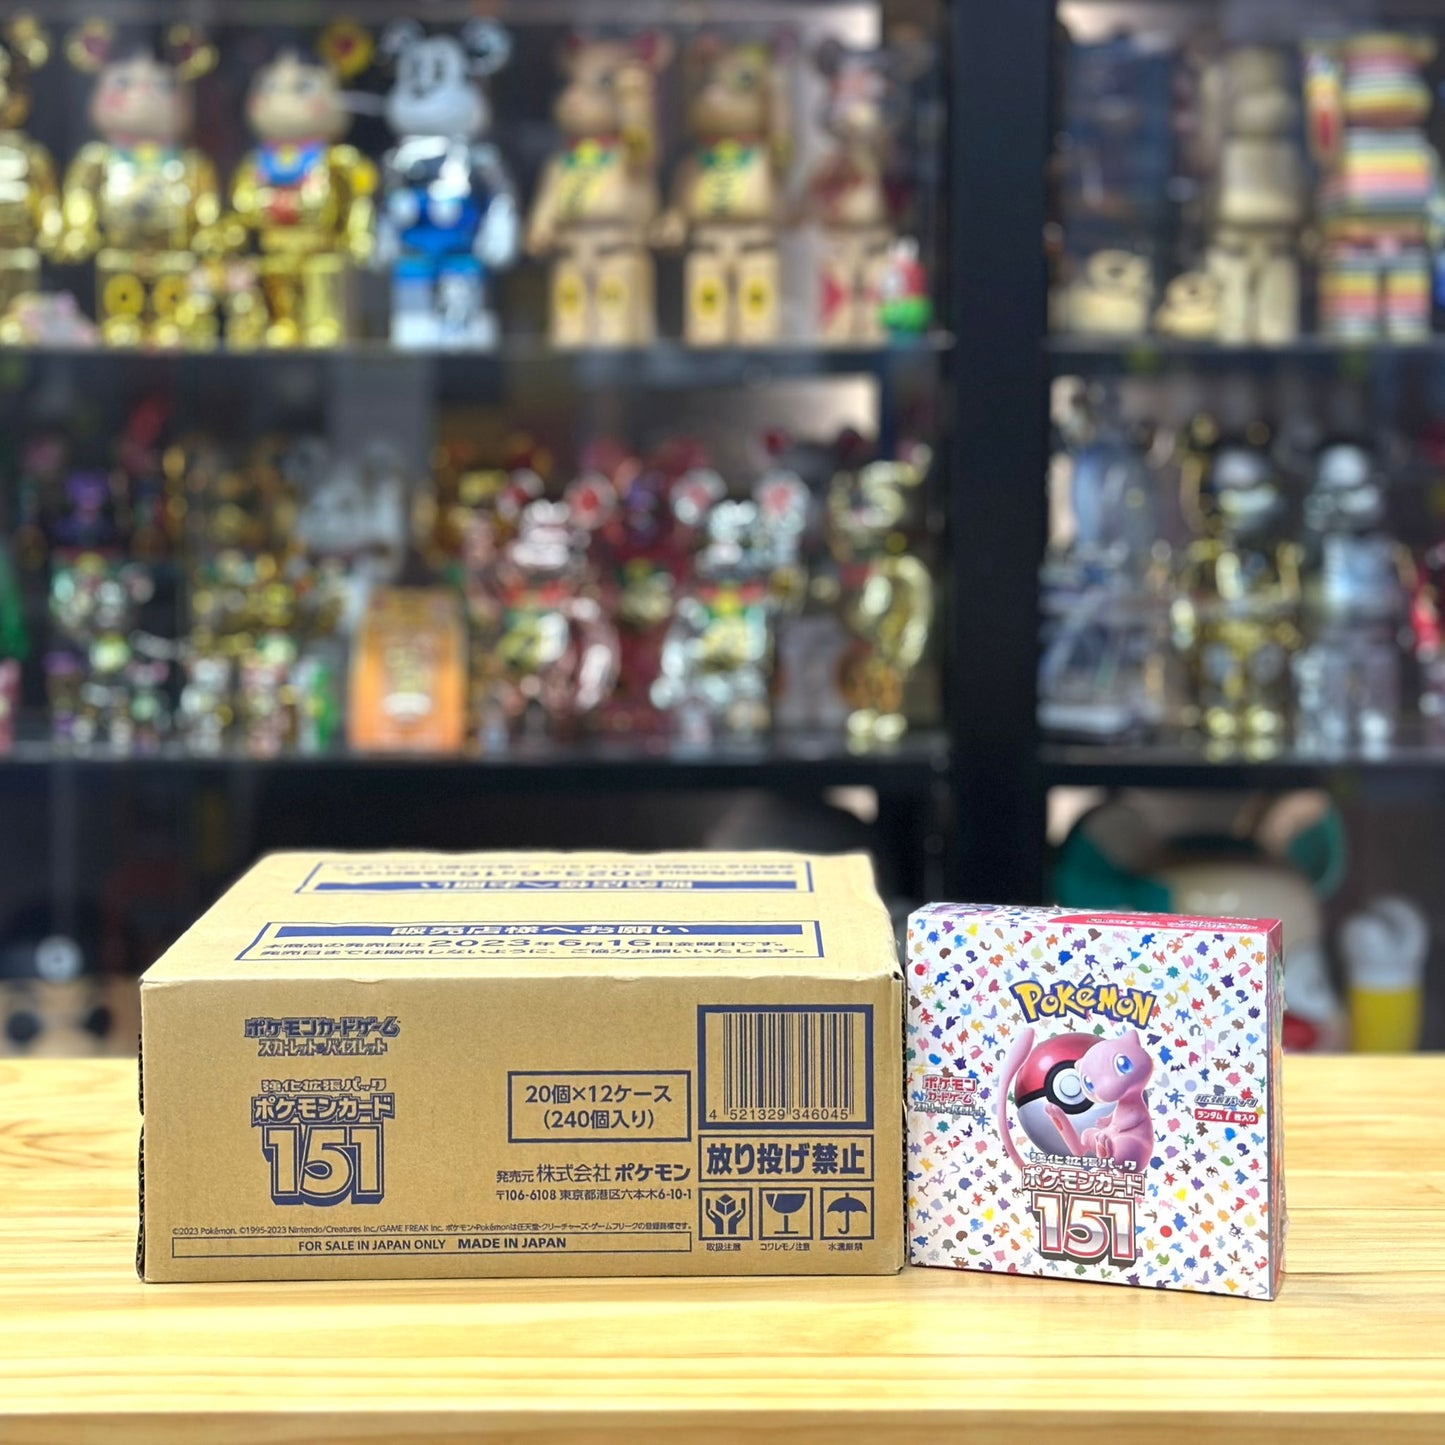 (原箱)Pokémon TCG Scarlet & Violet 151 Enhanced Expansion Pack (Made In Japan)ポケモンカード 151(SV2a)